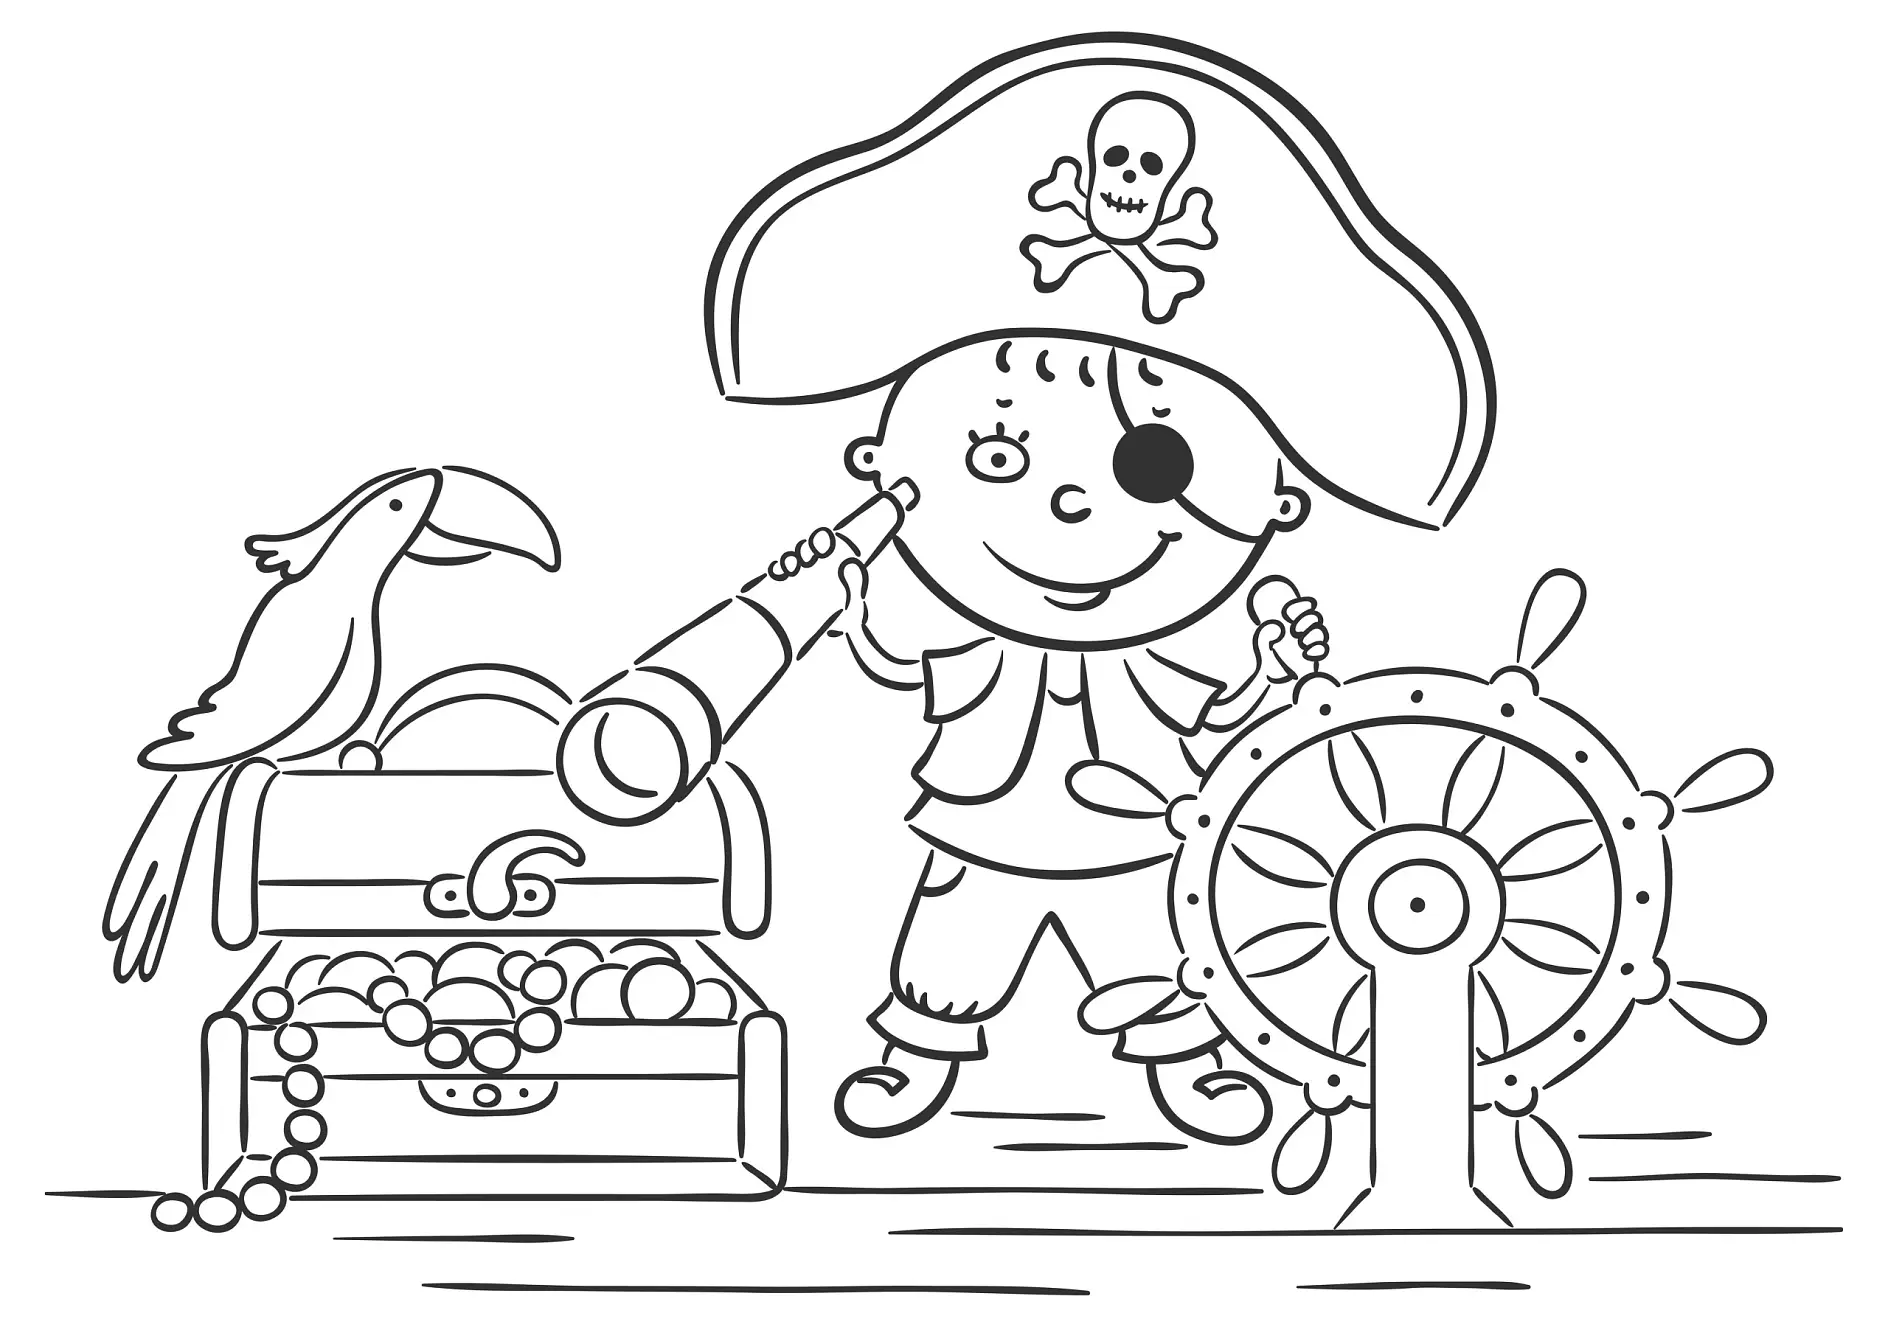 Ausmalbild Pirat mit Schatzkiste und Papagei am Steuerrad